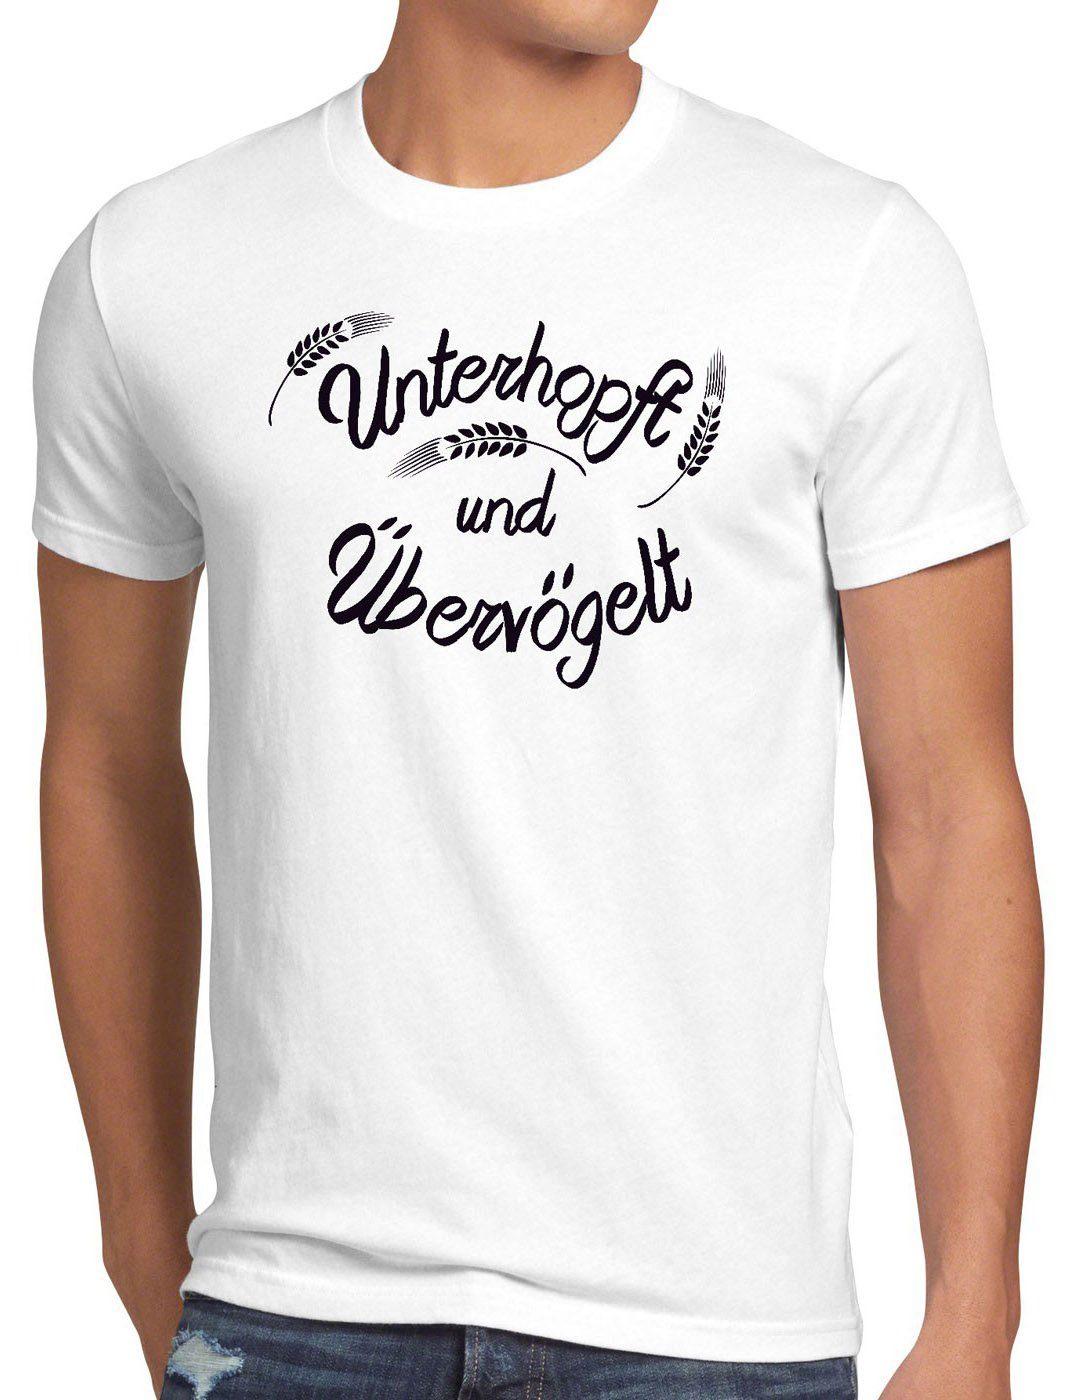 style3 Print-Shirt Herren T-Shirt Unterhopft Übervögelt Kult Shirt Funshirt Spruch Bier Malz Fun weiß